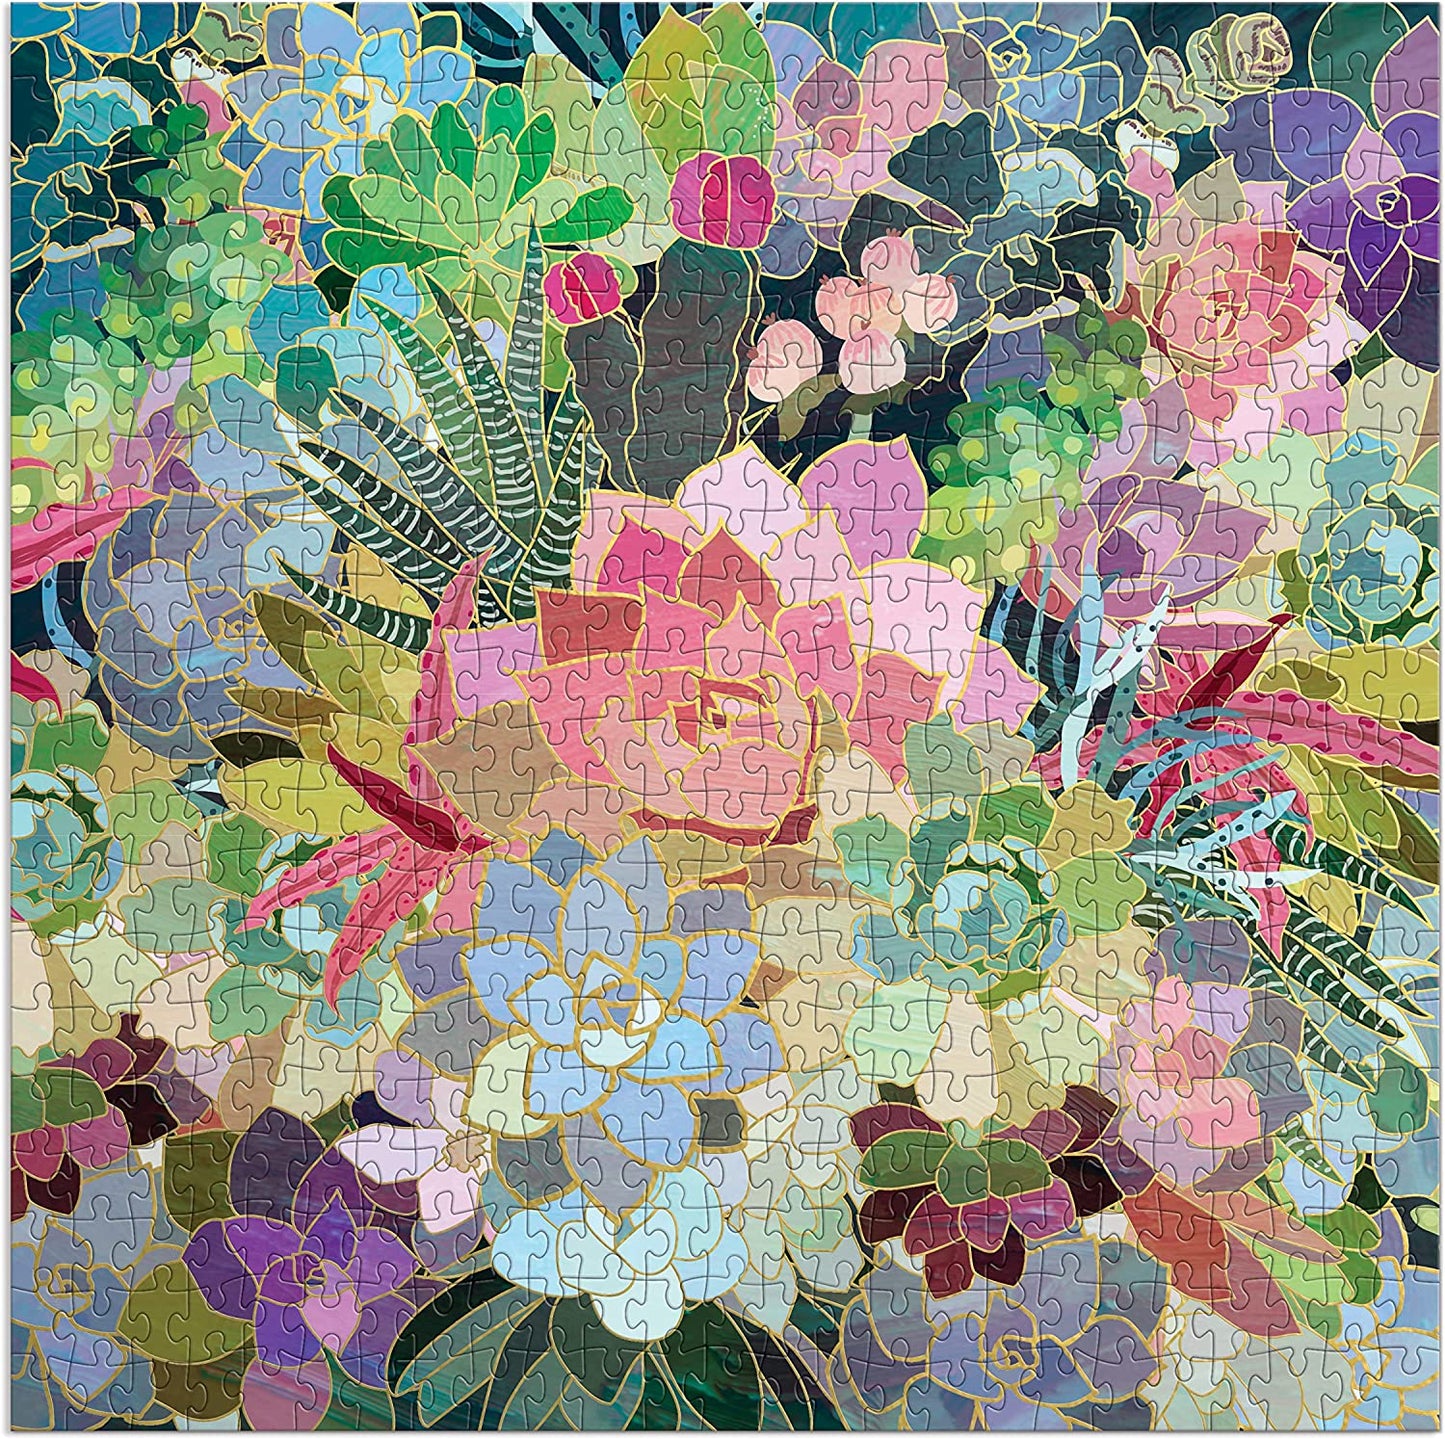 Succulent Mosaic 500 Piece Foil Puzzle from Galison